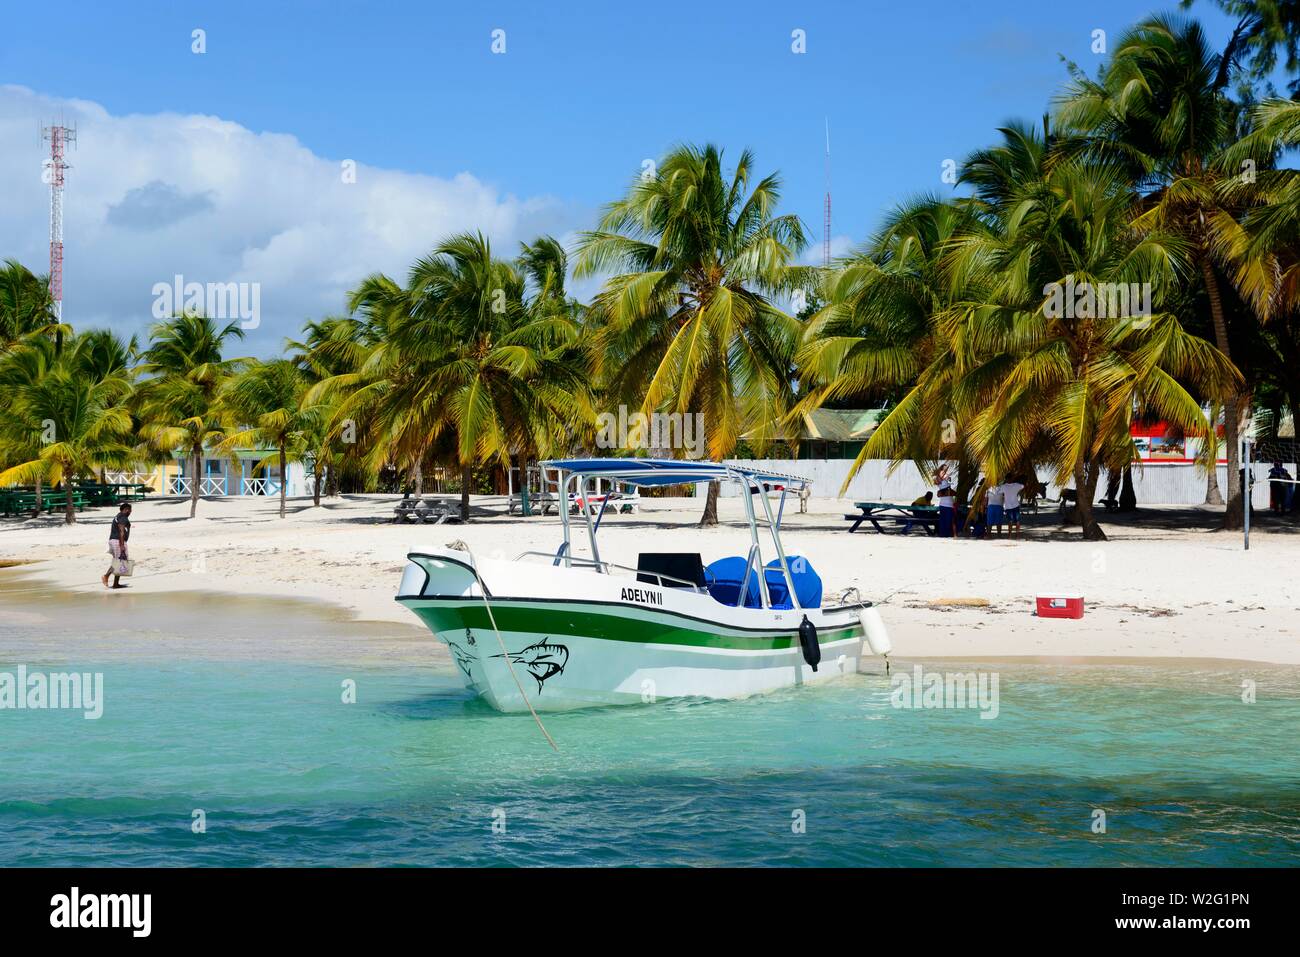 Boat on the beach, fishing village Mano Juan, Isla Saona Island, Parque Nacional del Este, Dominican Republic Stock Photo